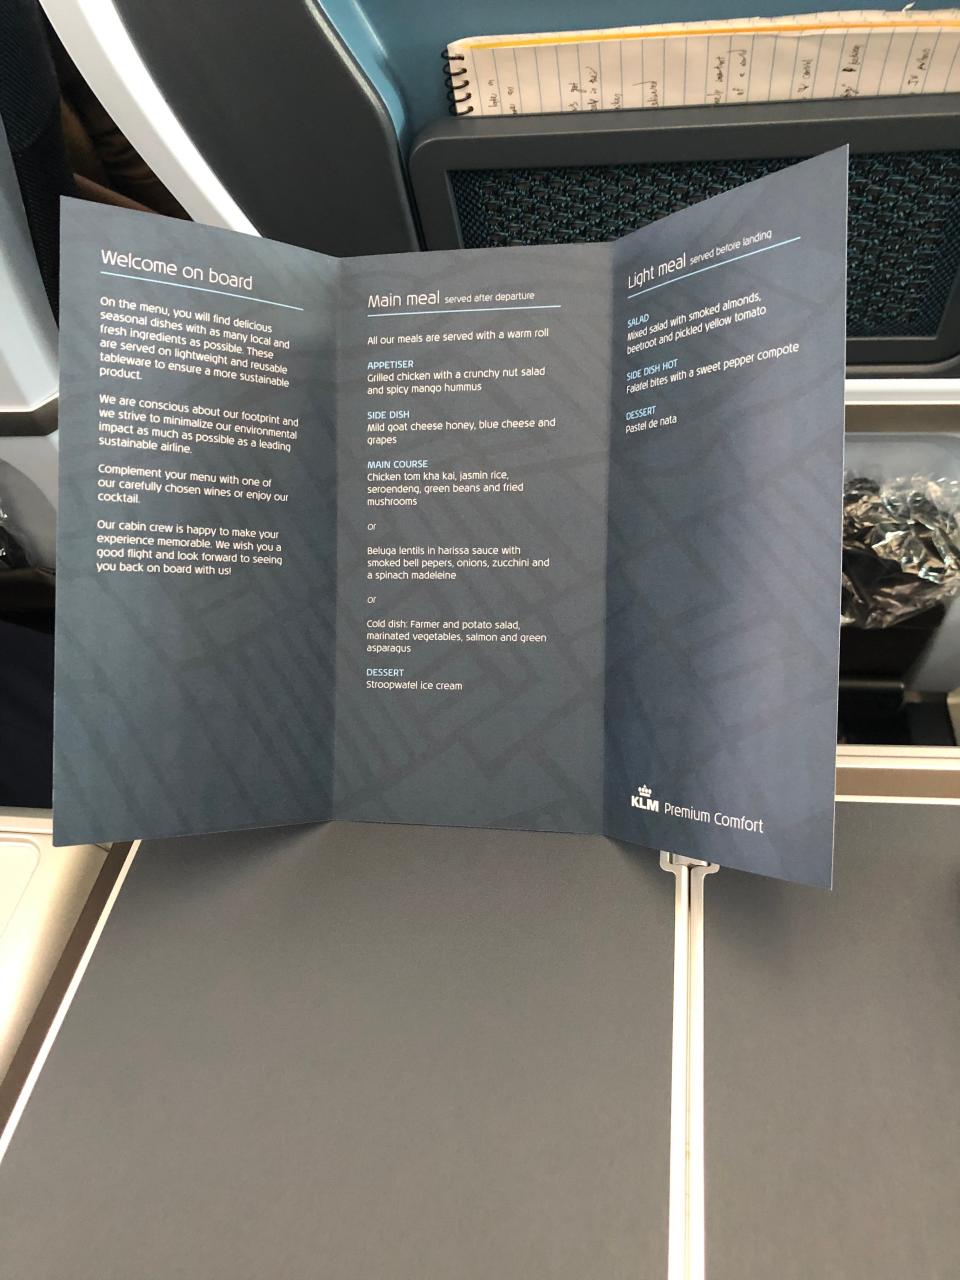 A printed menu in KLM's Premium Comfort cabin.